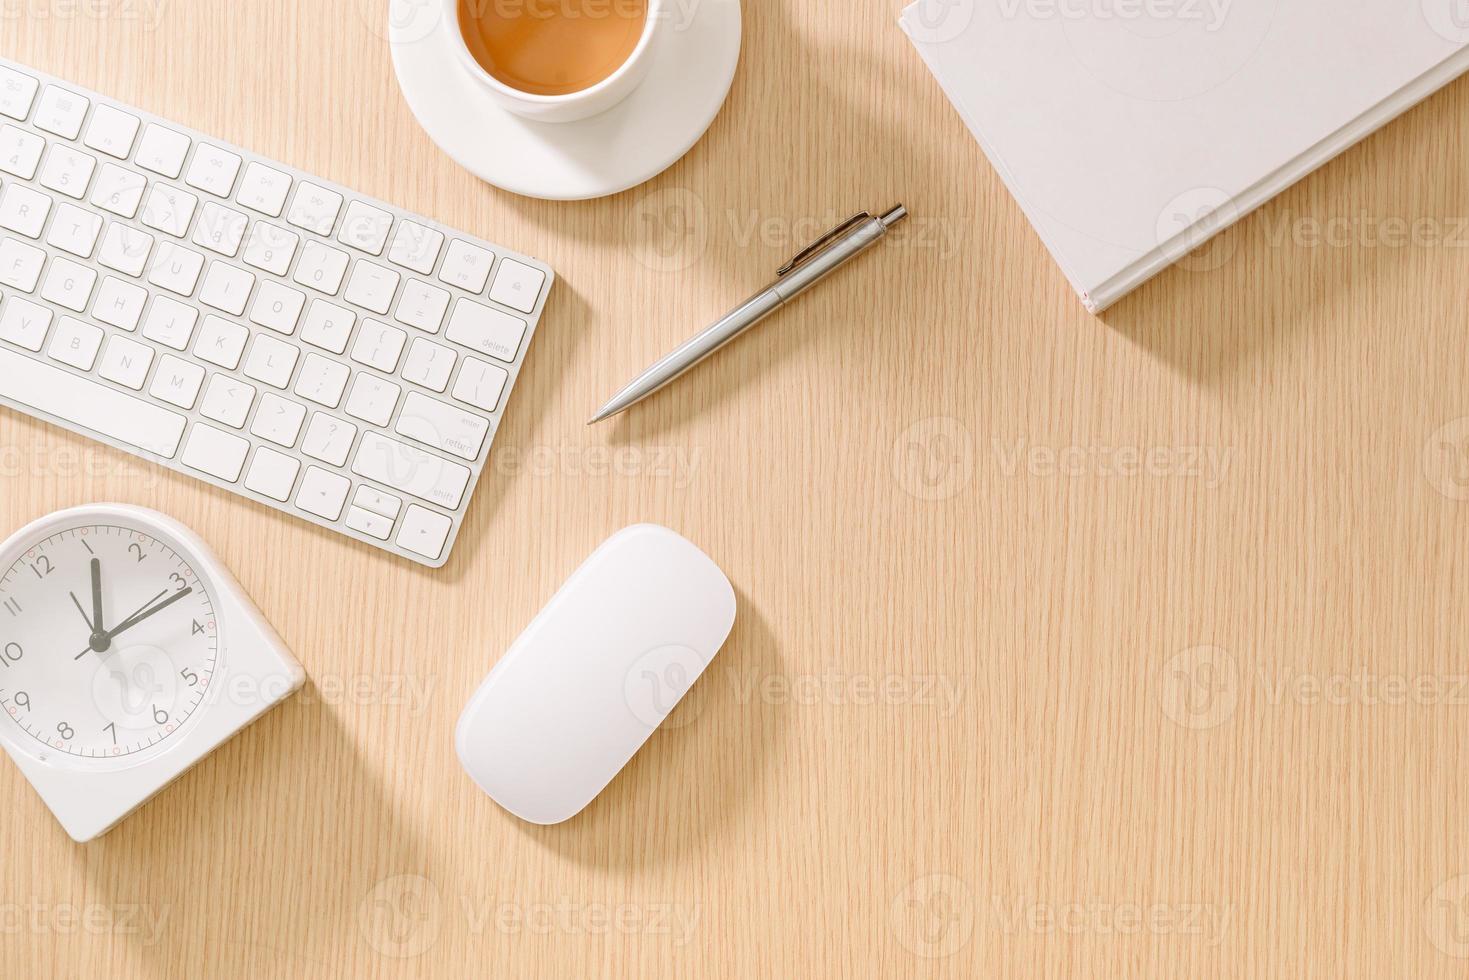 escritorio de oficina blanco moderno con teclado, mouse, reloj, libro, bolígrafo y taza de café.vista superior con copiar y pegar. maqueta de concepto de negocio y estrategia. foto